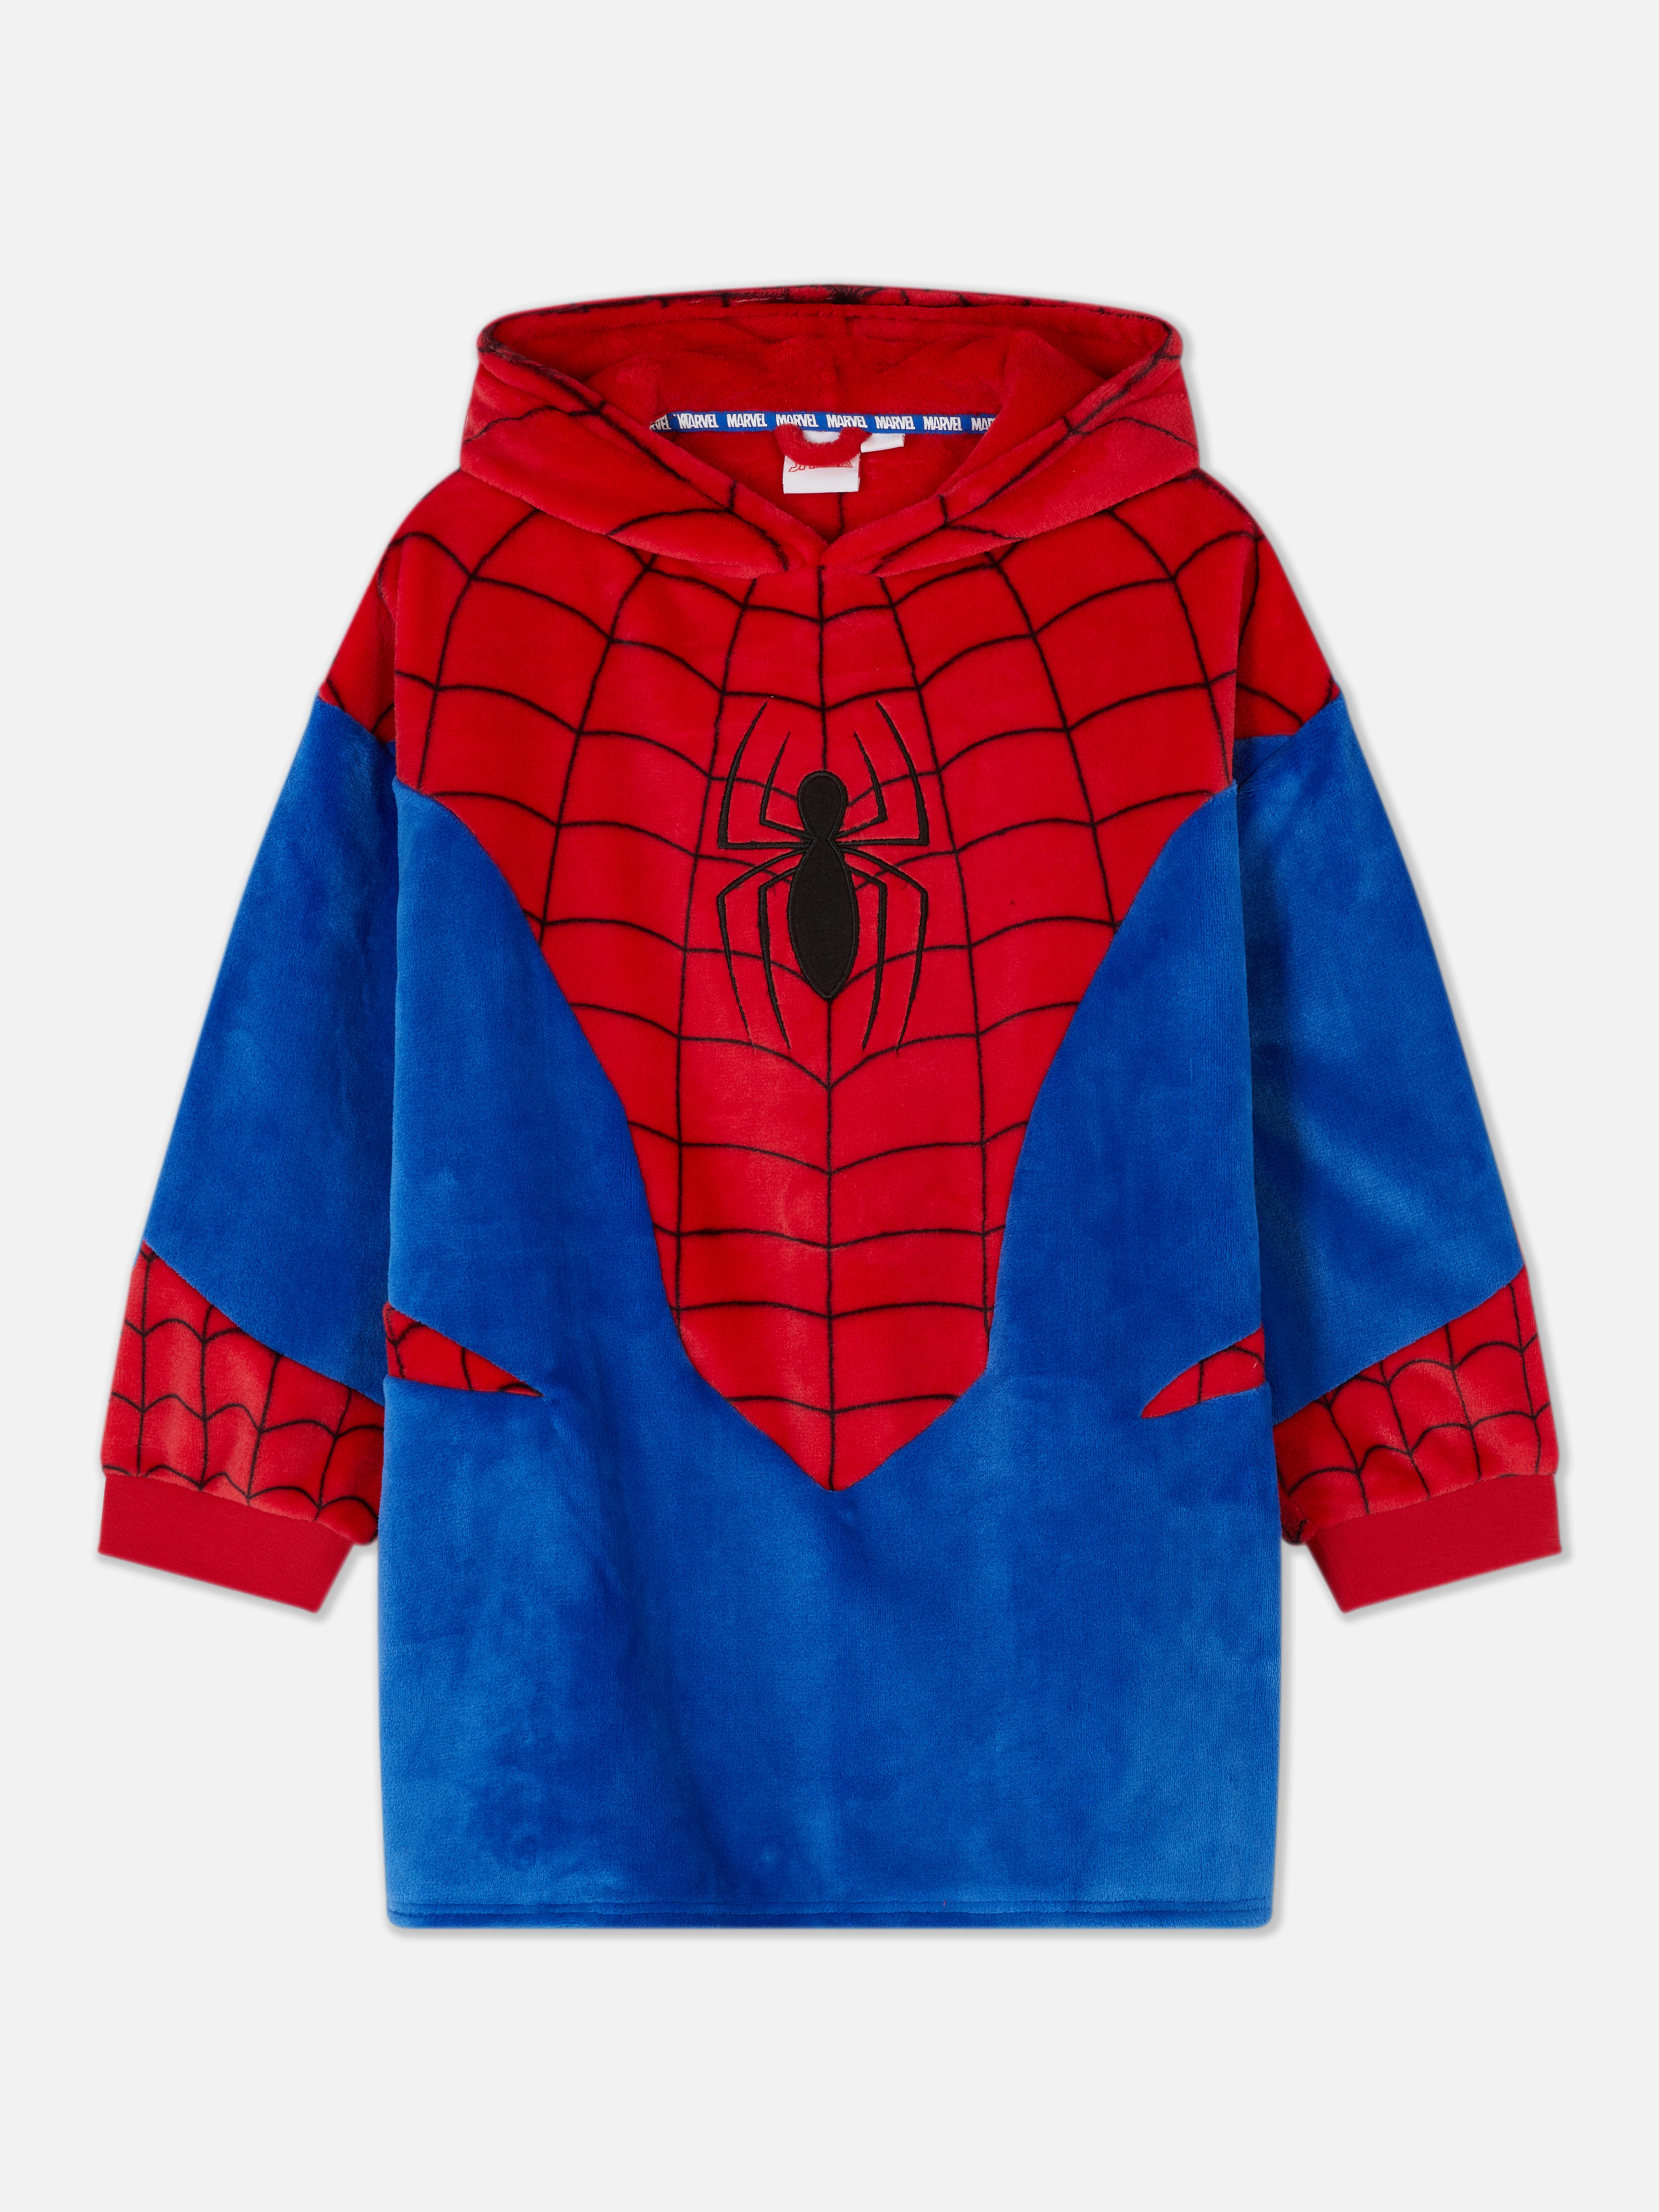 Sudadera de Spiderman de Disney | Pijamas para niños | Moda niños | Ropa para niños | Todos los productos | Primark España